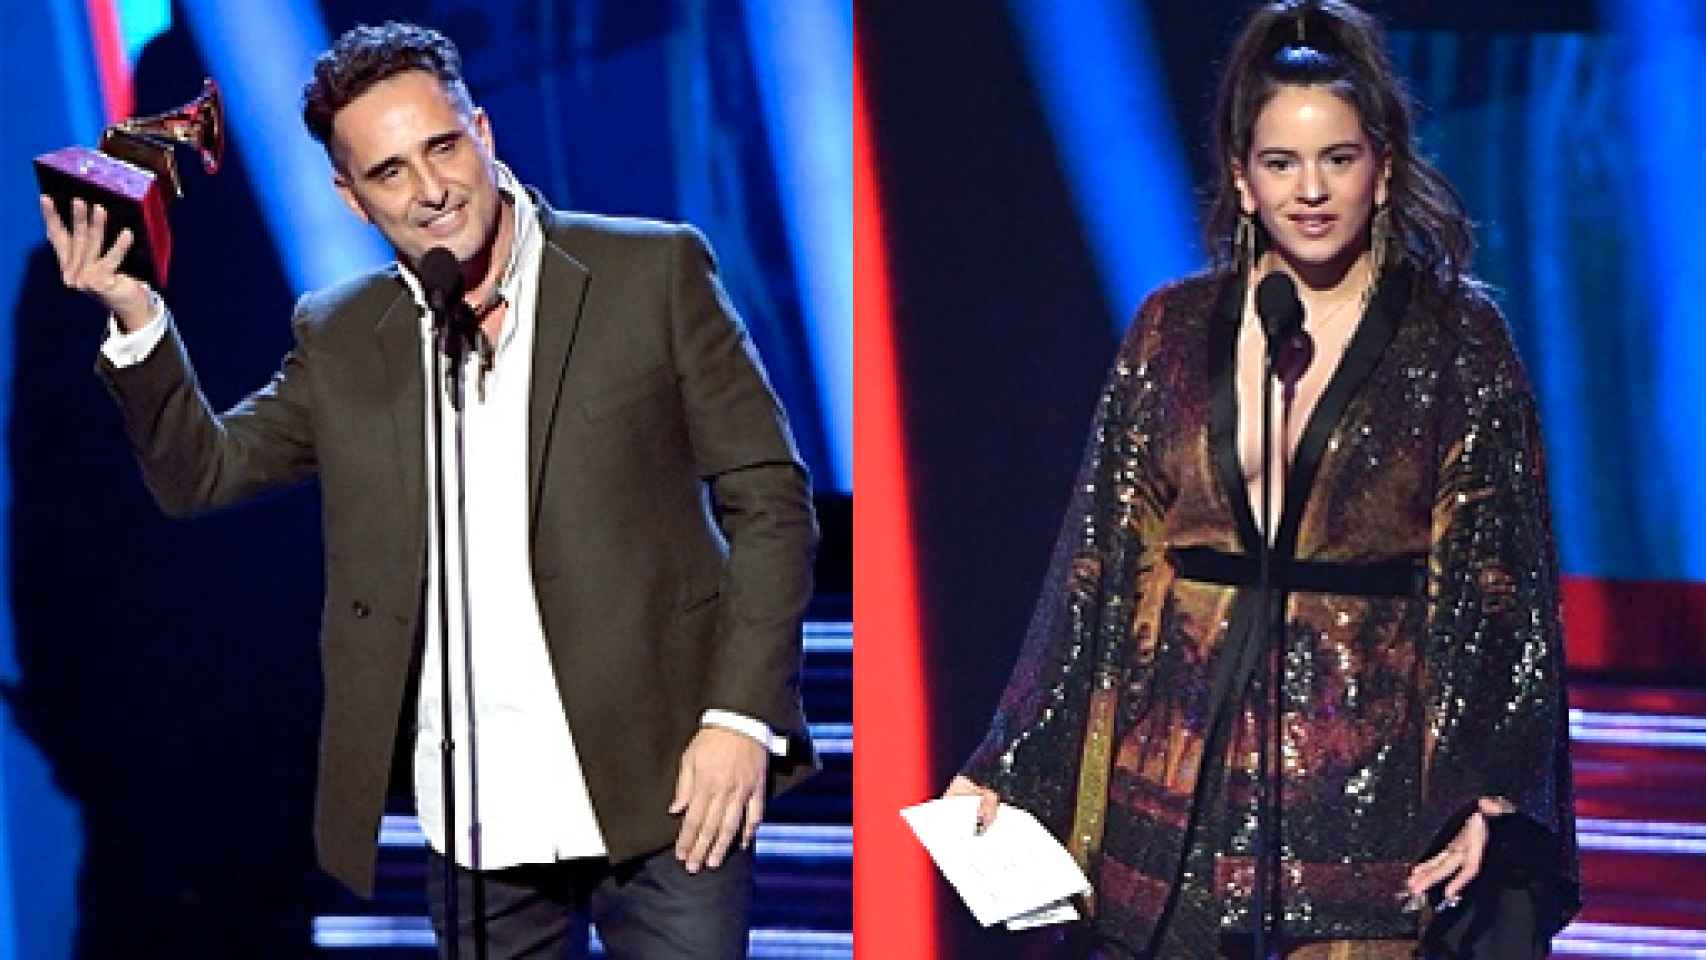 Image: Jorge Drexler y Rosalía triunfan en los Grammy Latinos